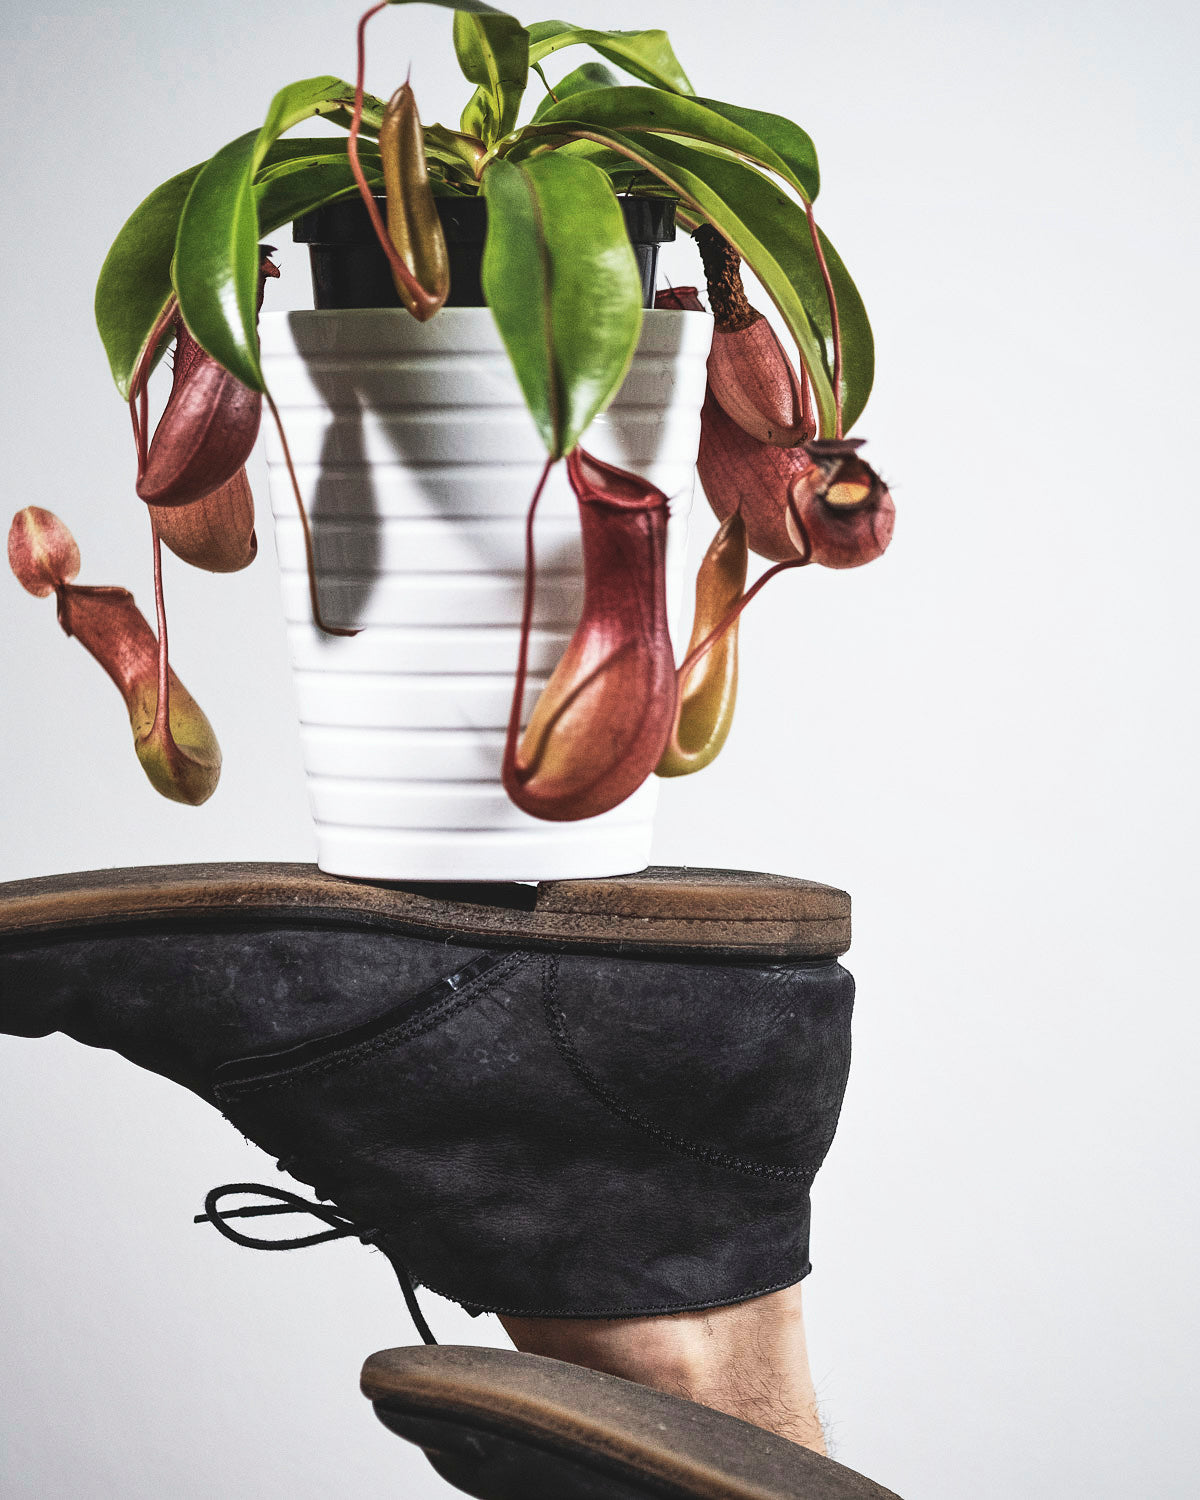 Kannenpflanze in weissem Topf balanciert auf einer Schuhsohle